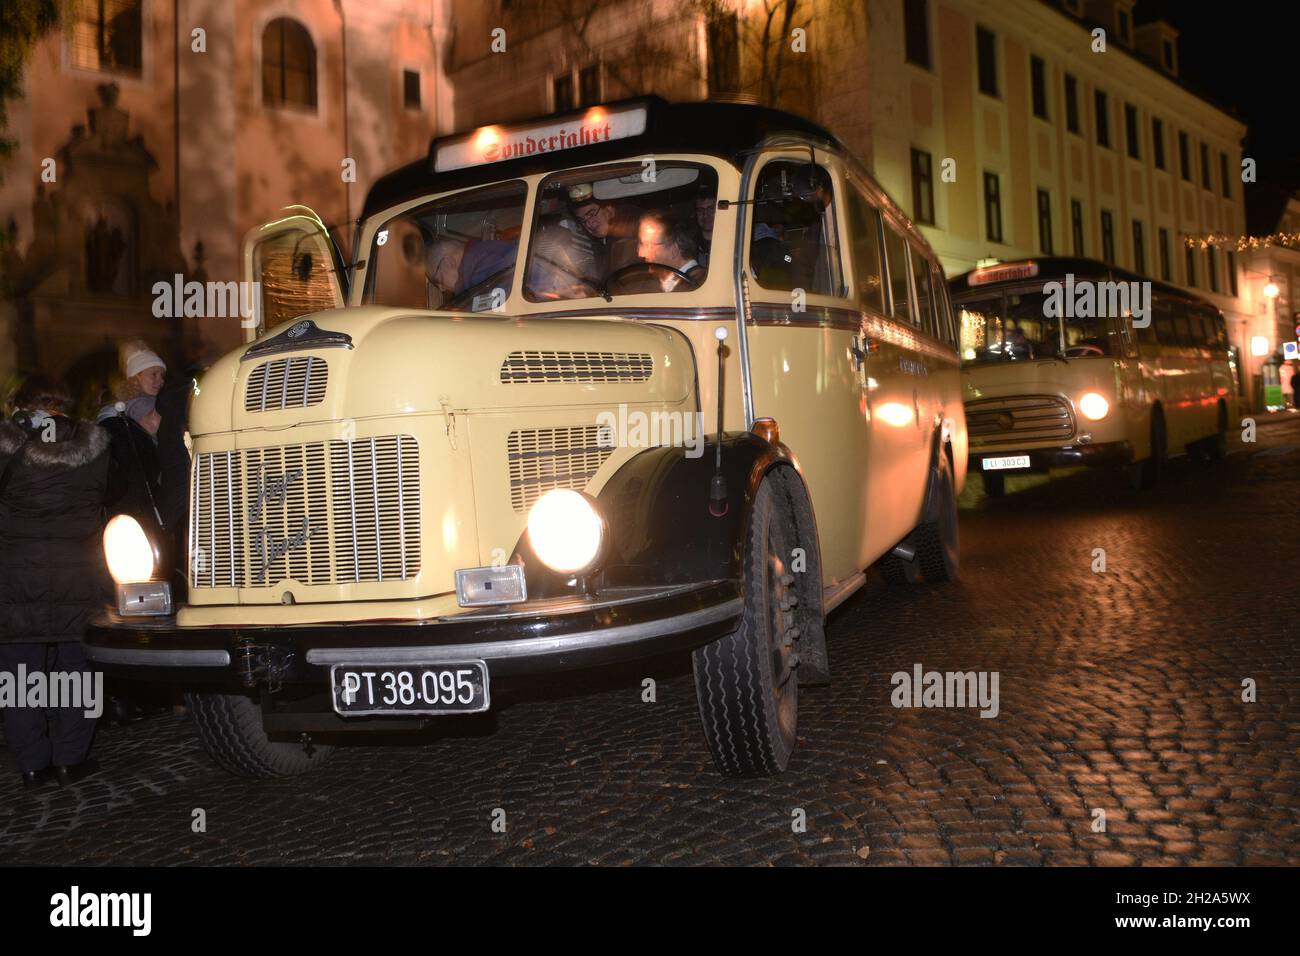 Die bekannte österreichische Firma Steyr erzeugte jahrzehntelange Traktoren, Busse und Lastkraftwagen. Zu Weihnachten fahren historische Steyr-Postbus Stock Photo